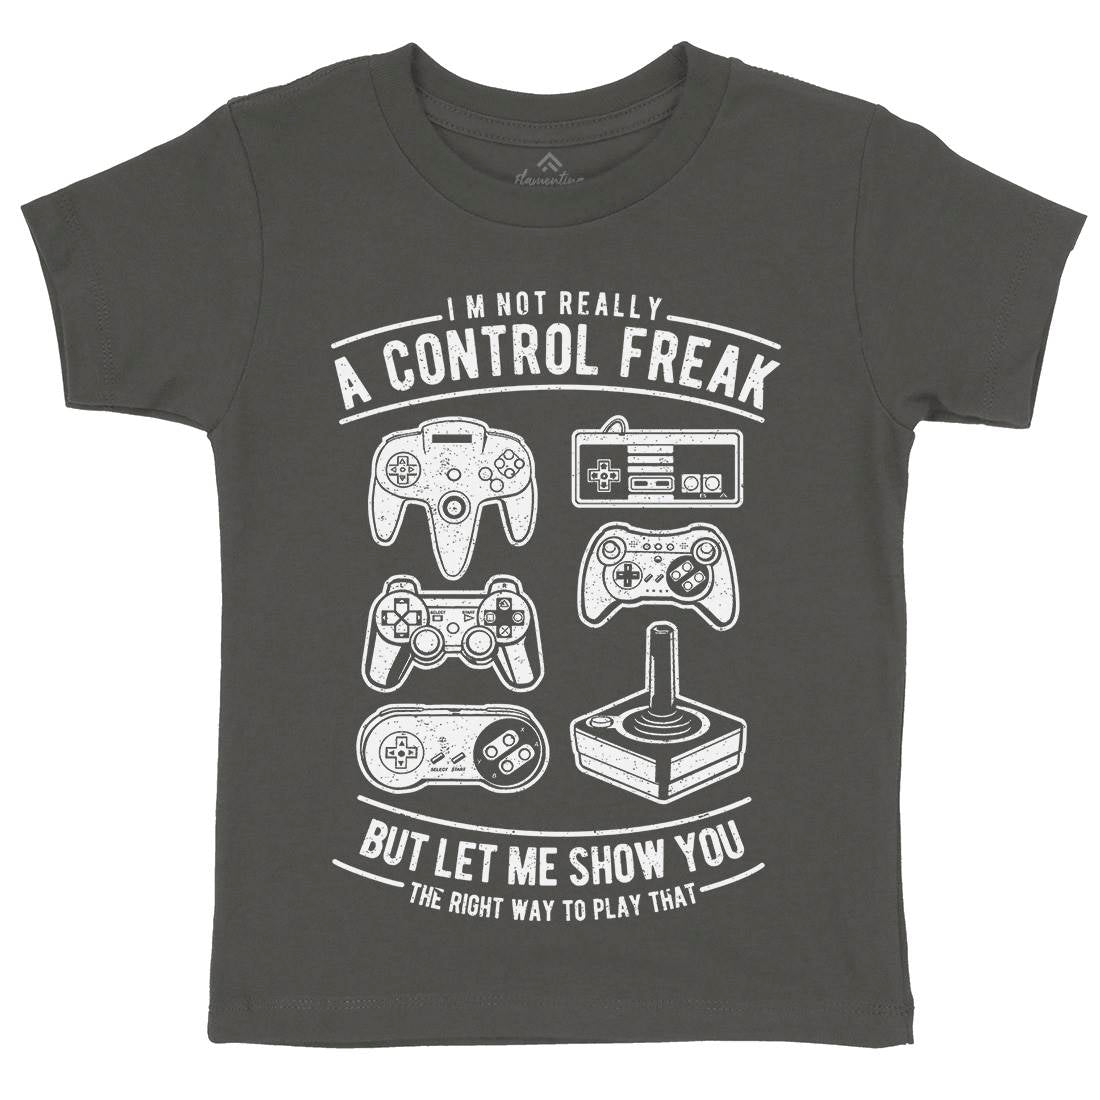 A Control Freak Kids Organic Crew Neck T-Shirt Geek A601